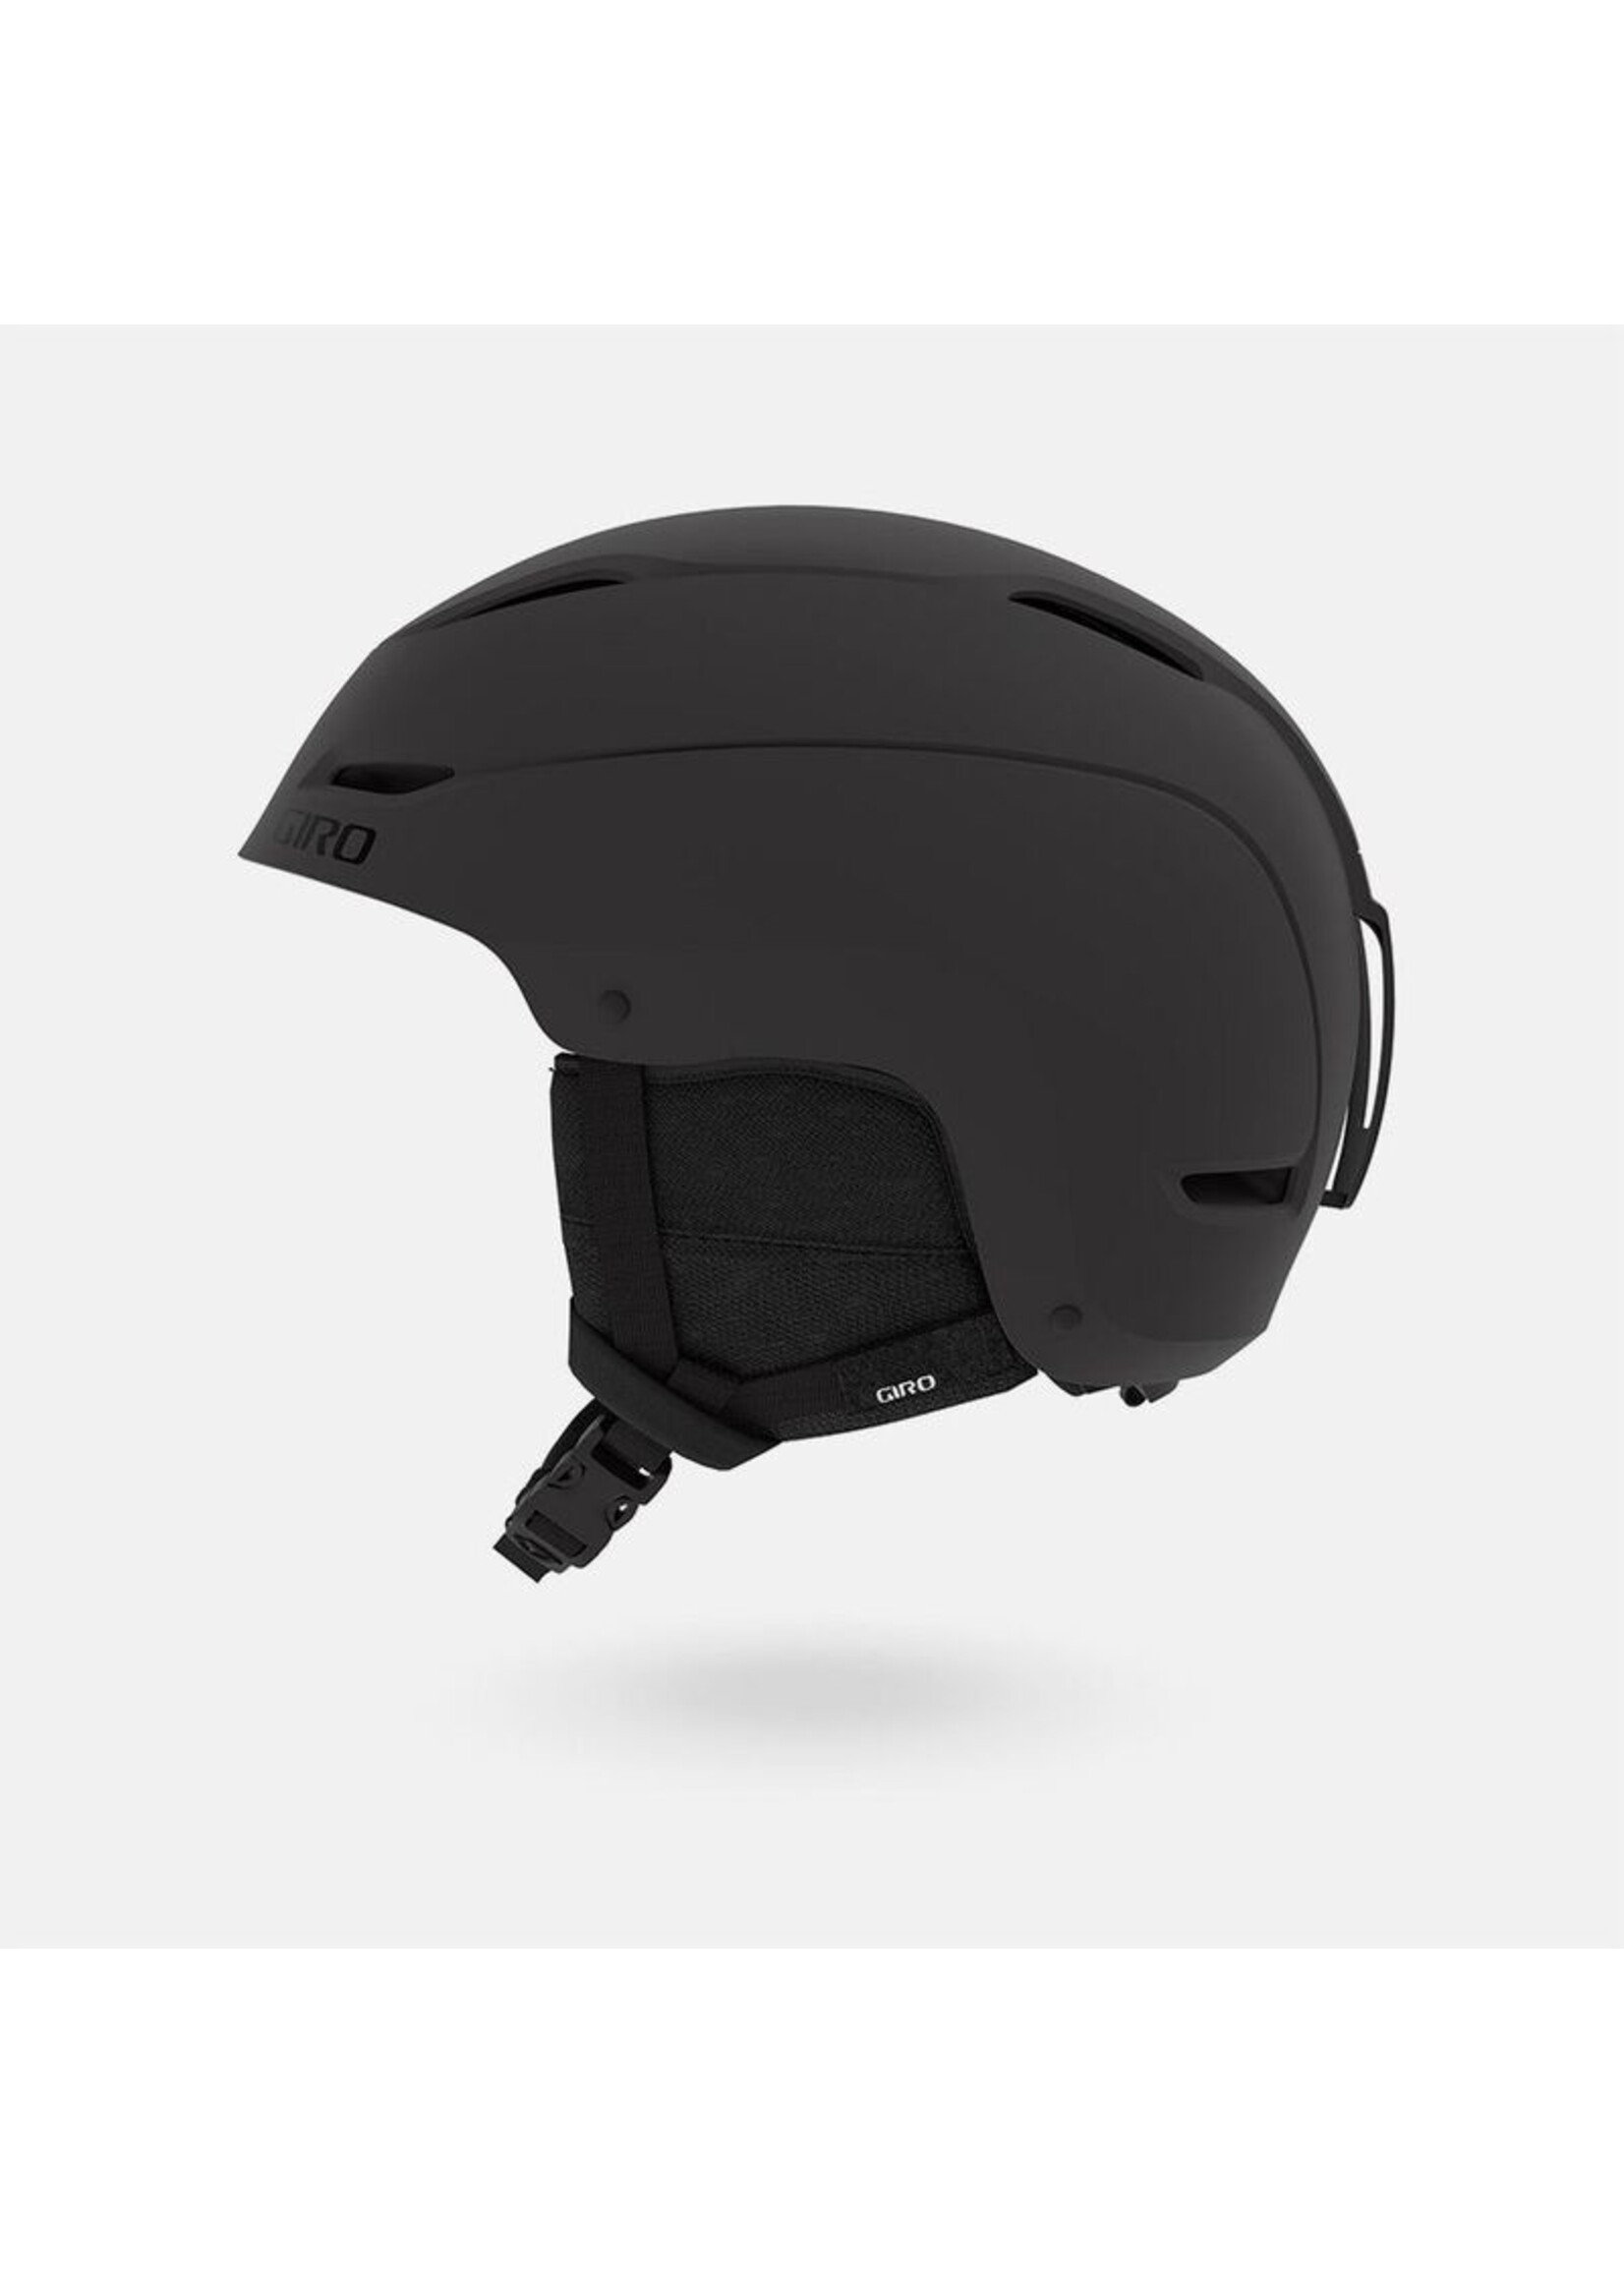 Giro GIRO RATIO Helmet